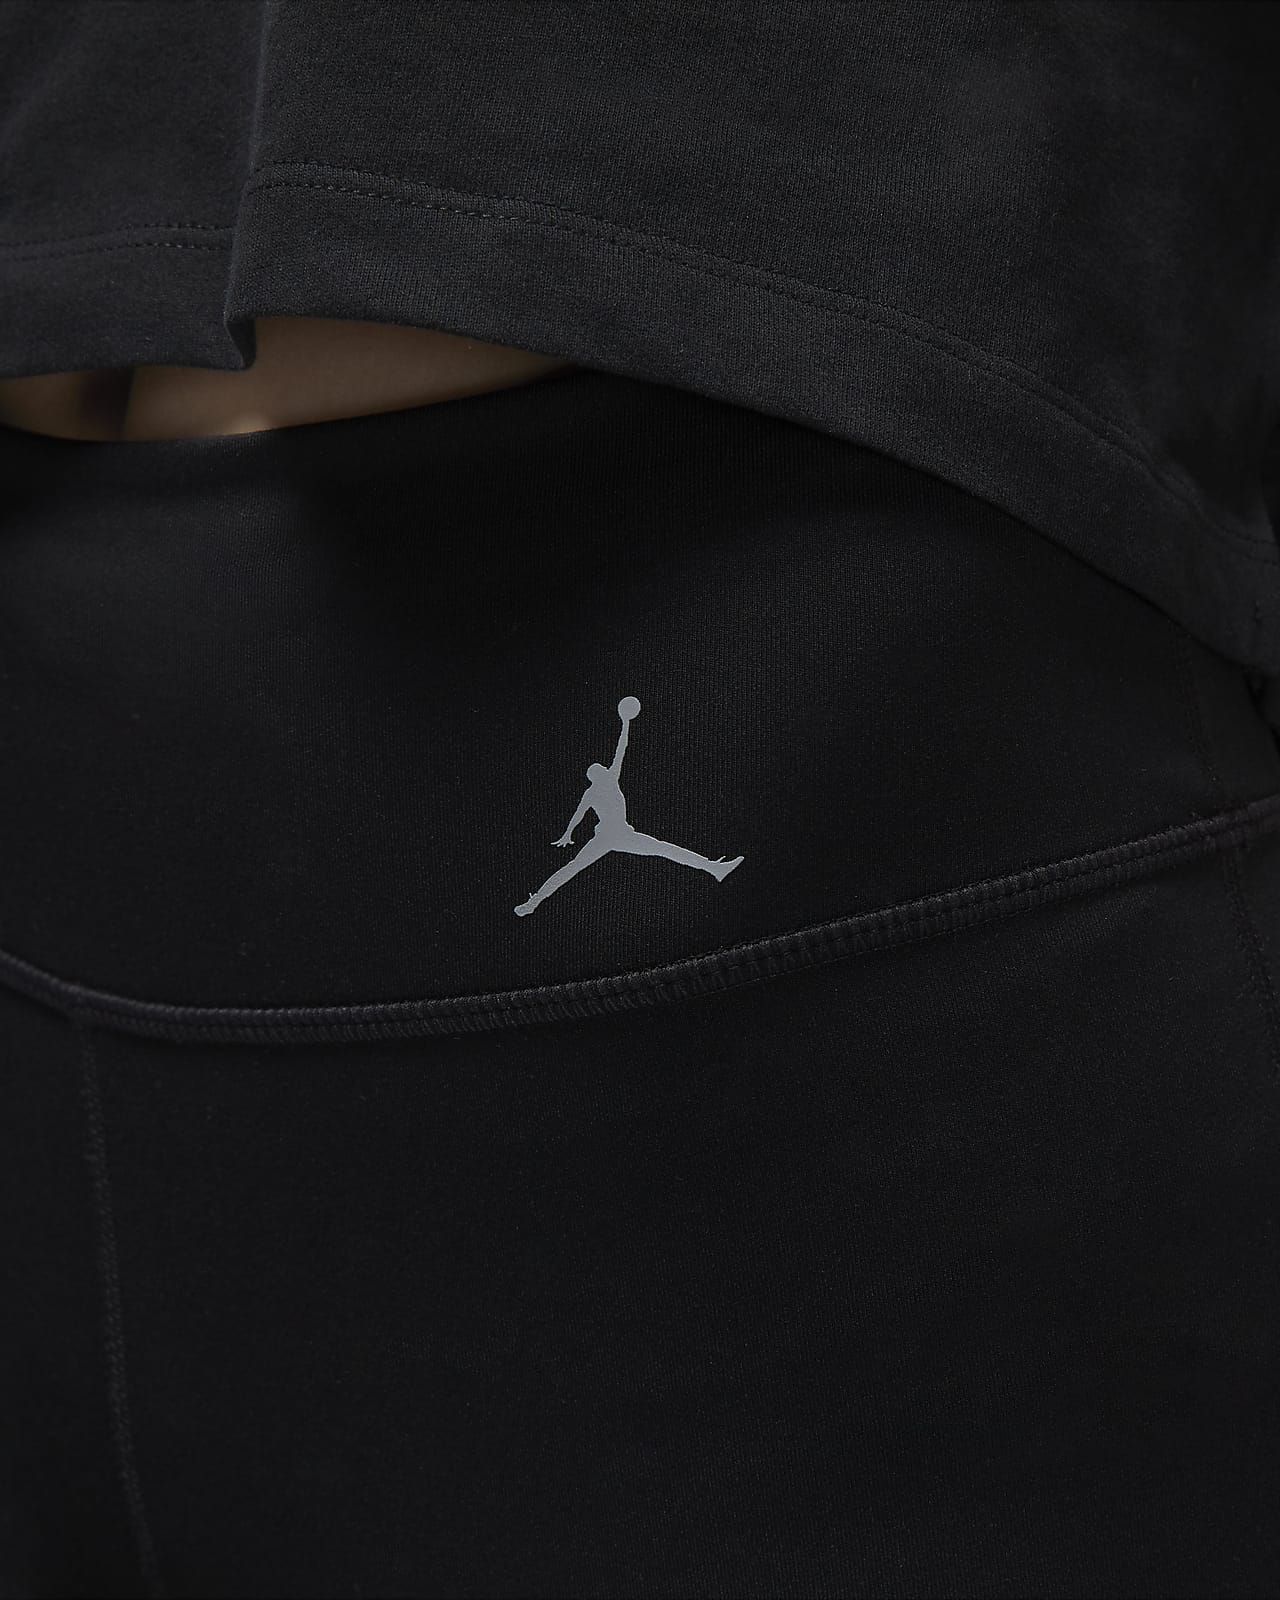 Leggings com logótipo Jordan Sport para mulher. Nike PT